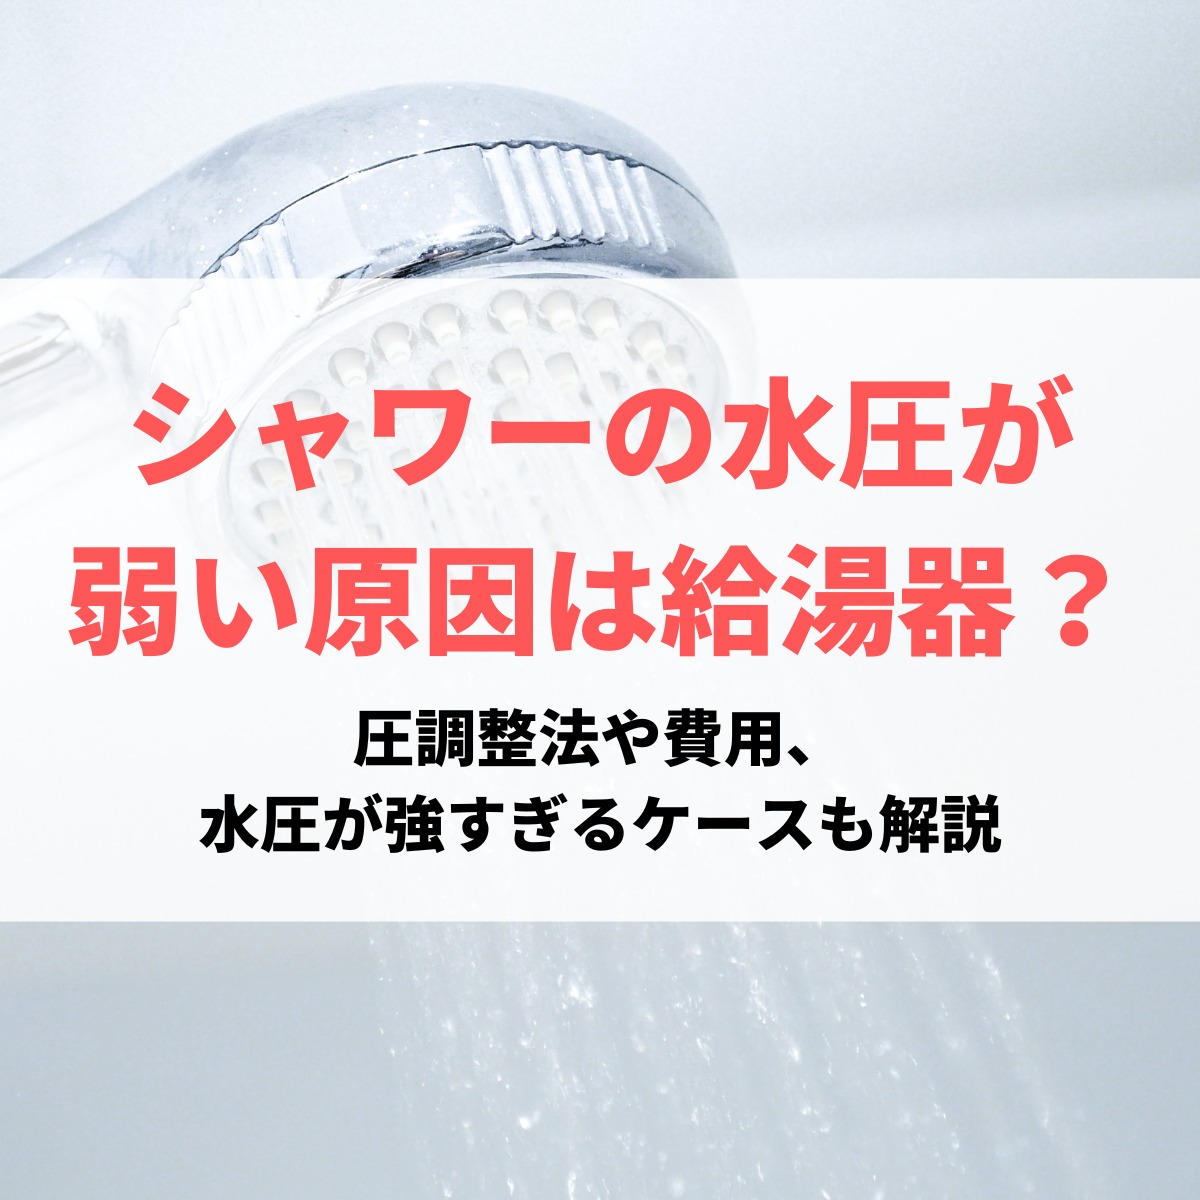 シャワーの水圧が 弱い原因は給湯器？